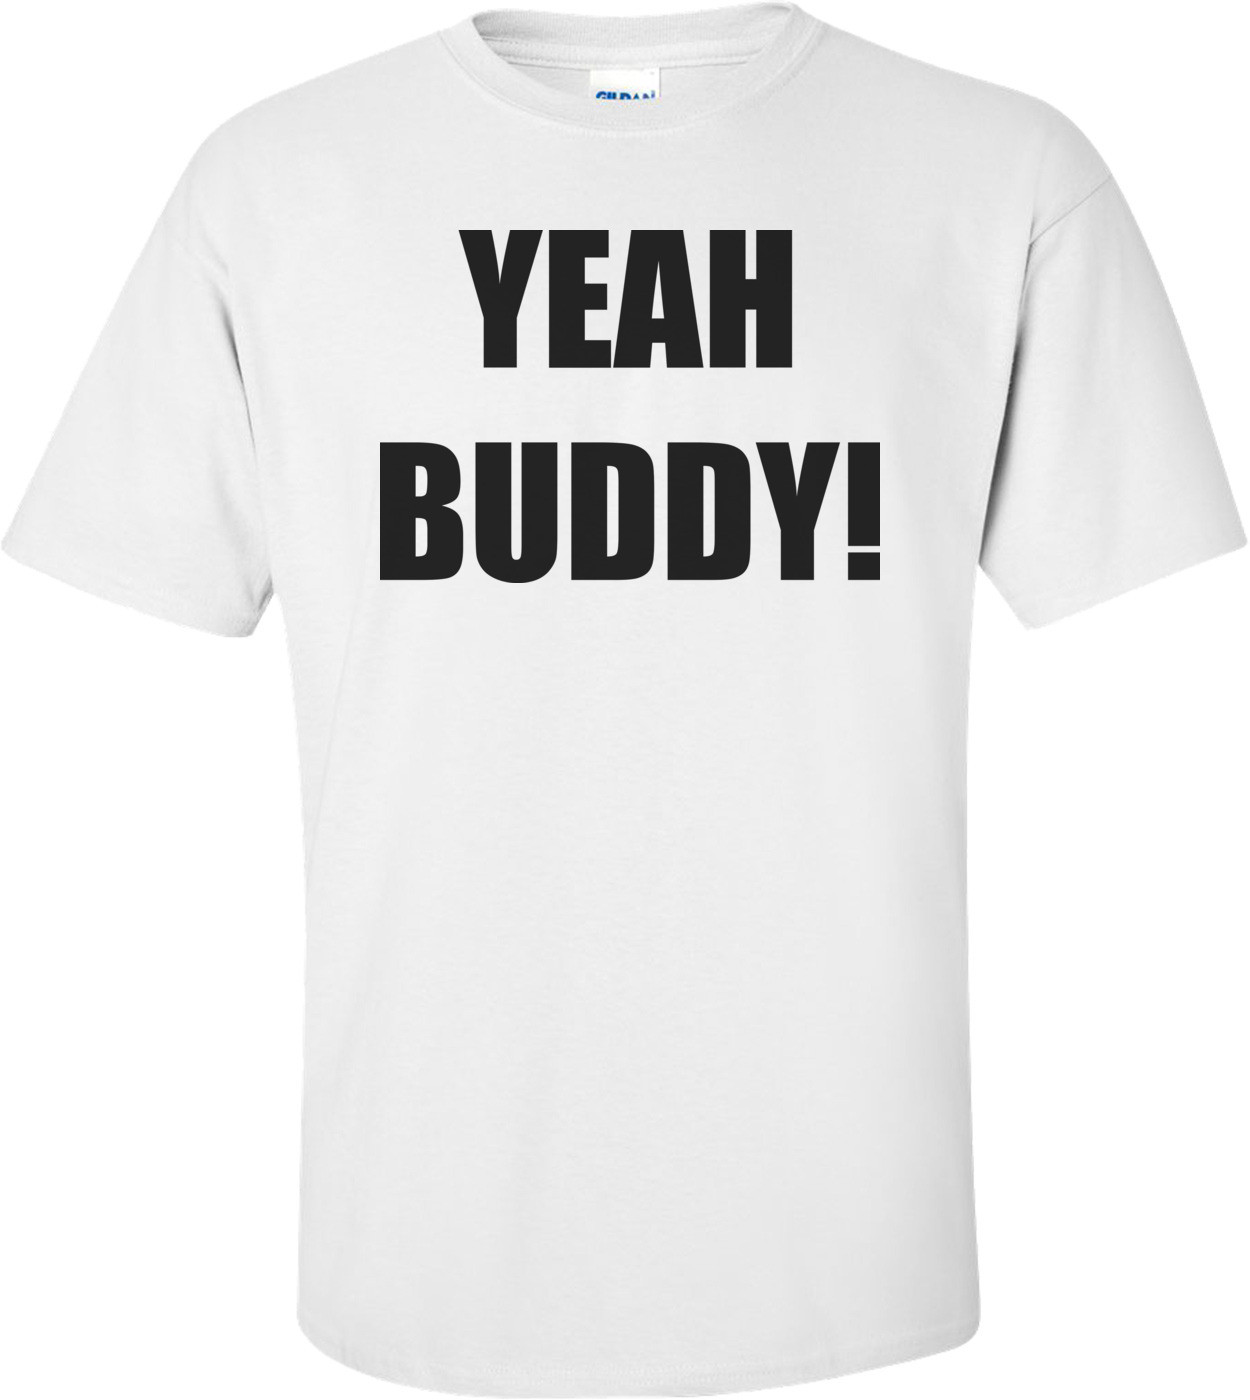 Yeah Buddy! Shirt